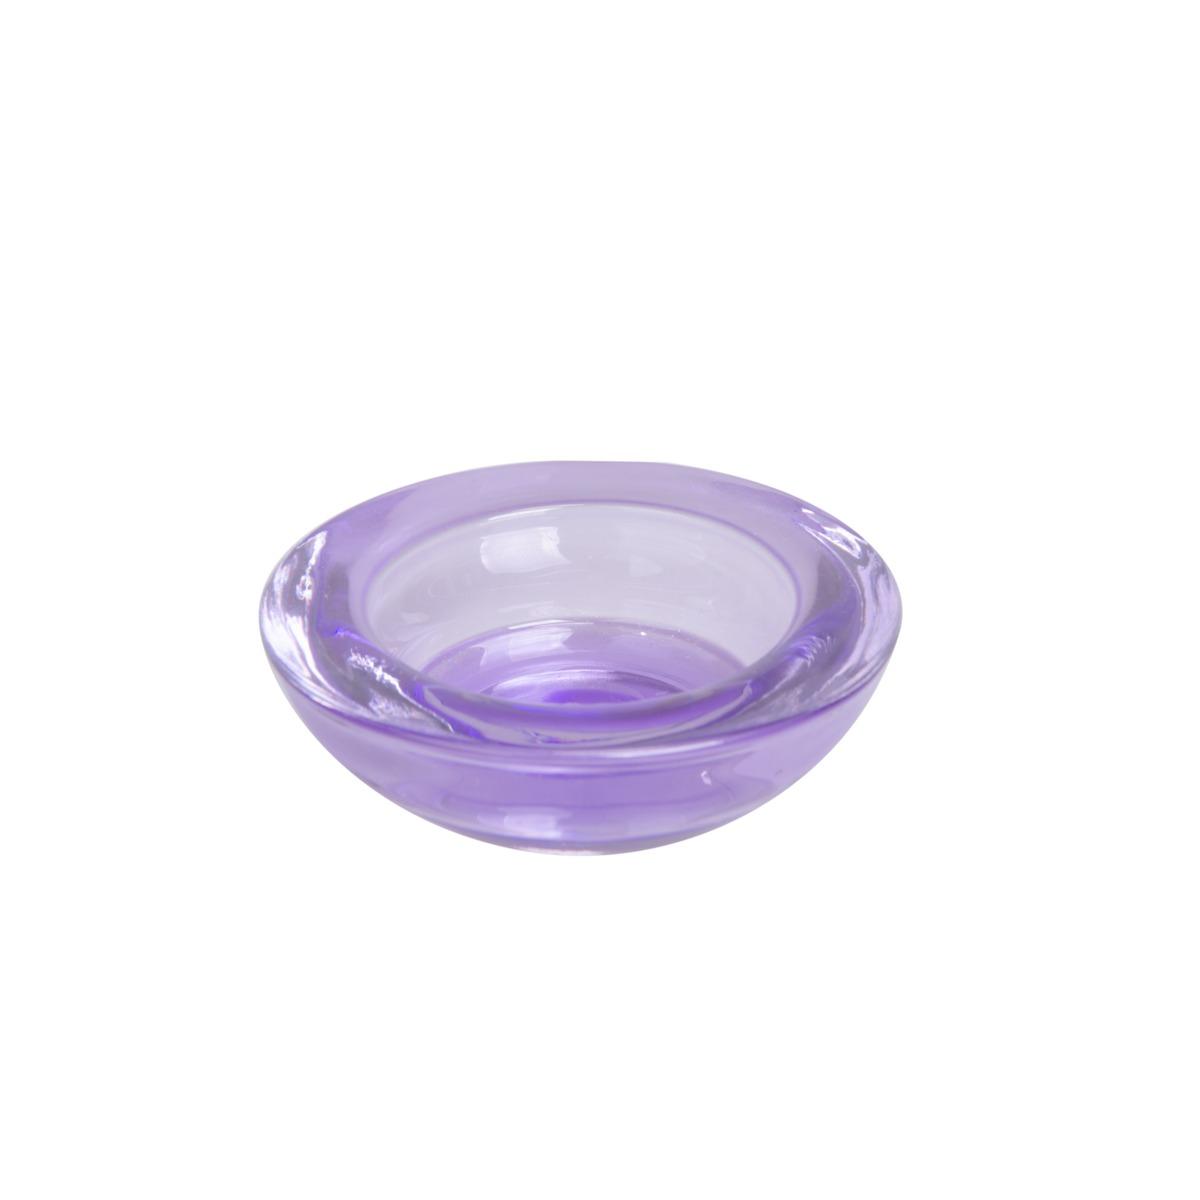 Photophore en verre - Diamètre 7,5 cm - Hauteur 2,5 cm - Violet